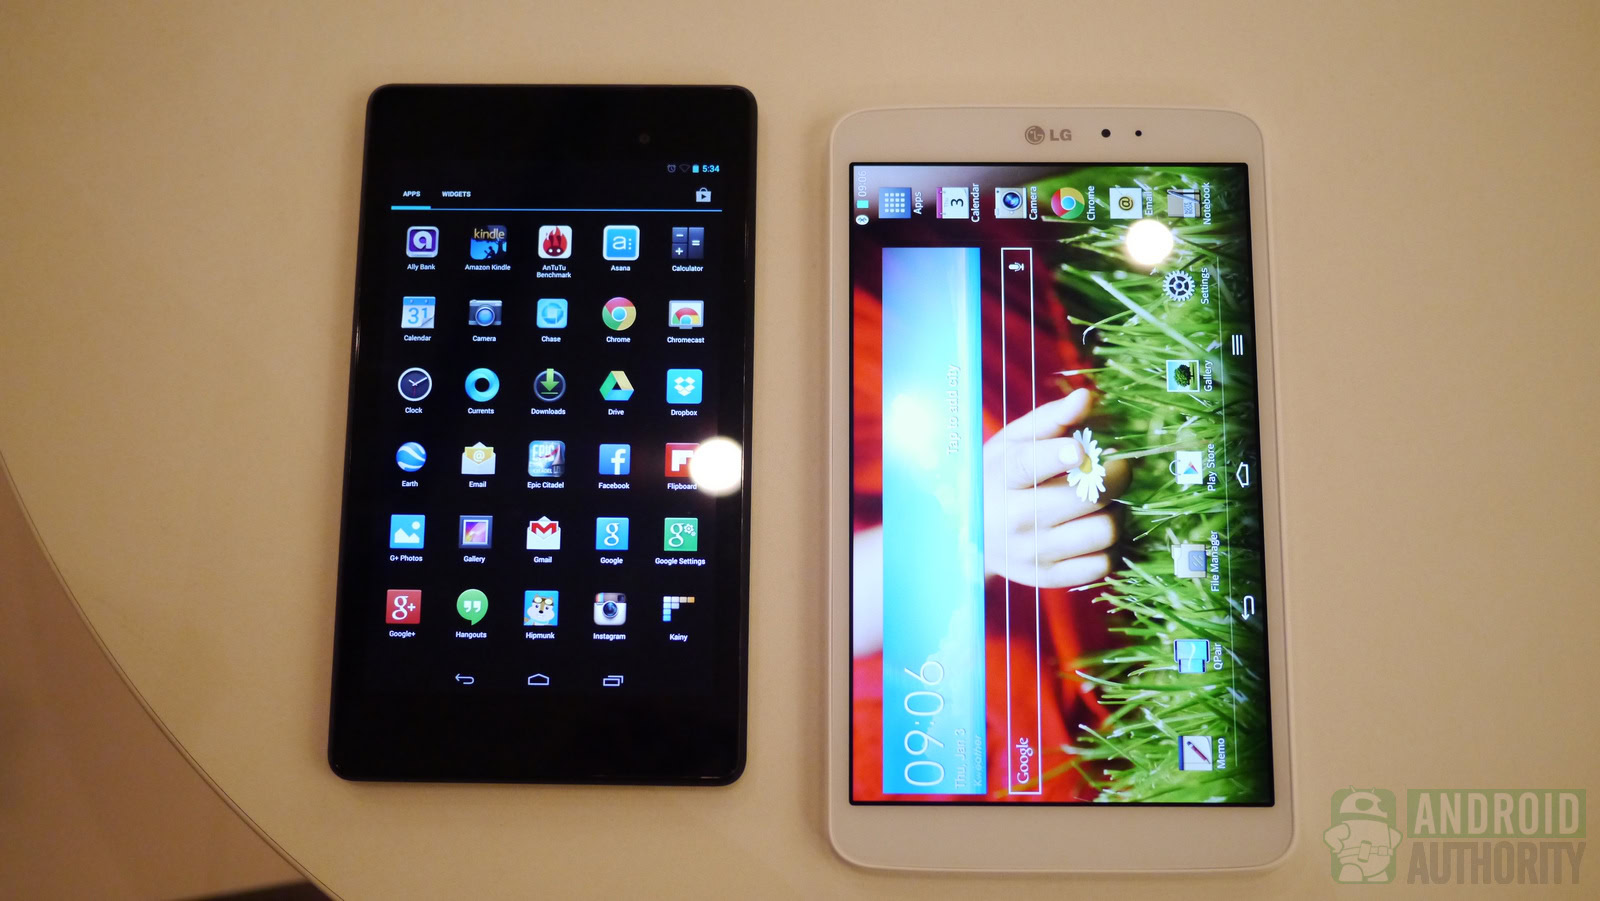 LG G Pad 8.3 and Nexus 7 (2013)